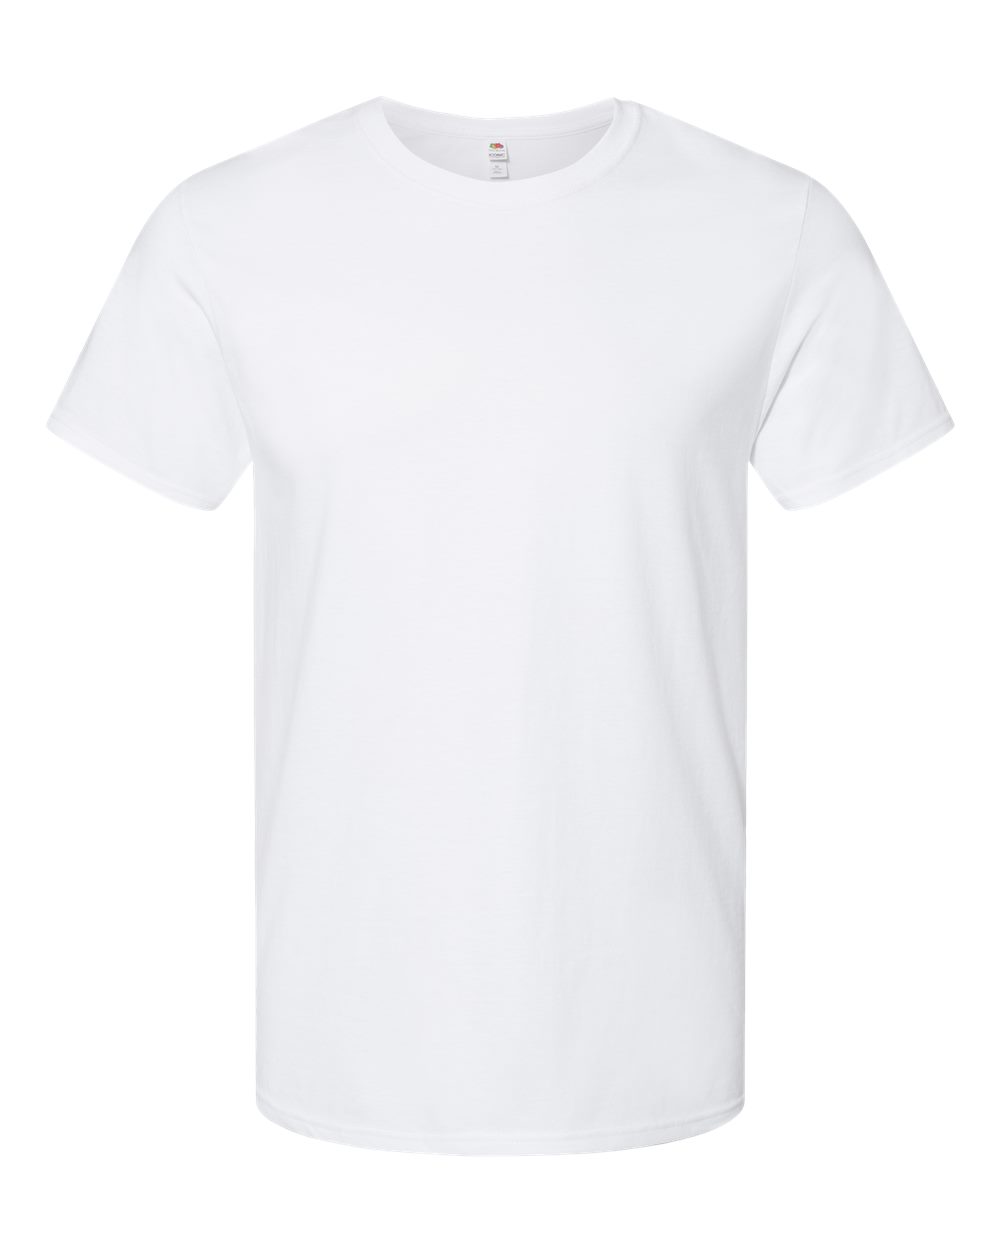 Unisex Iconic T-Shirt-